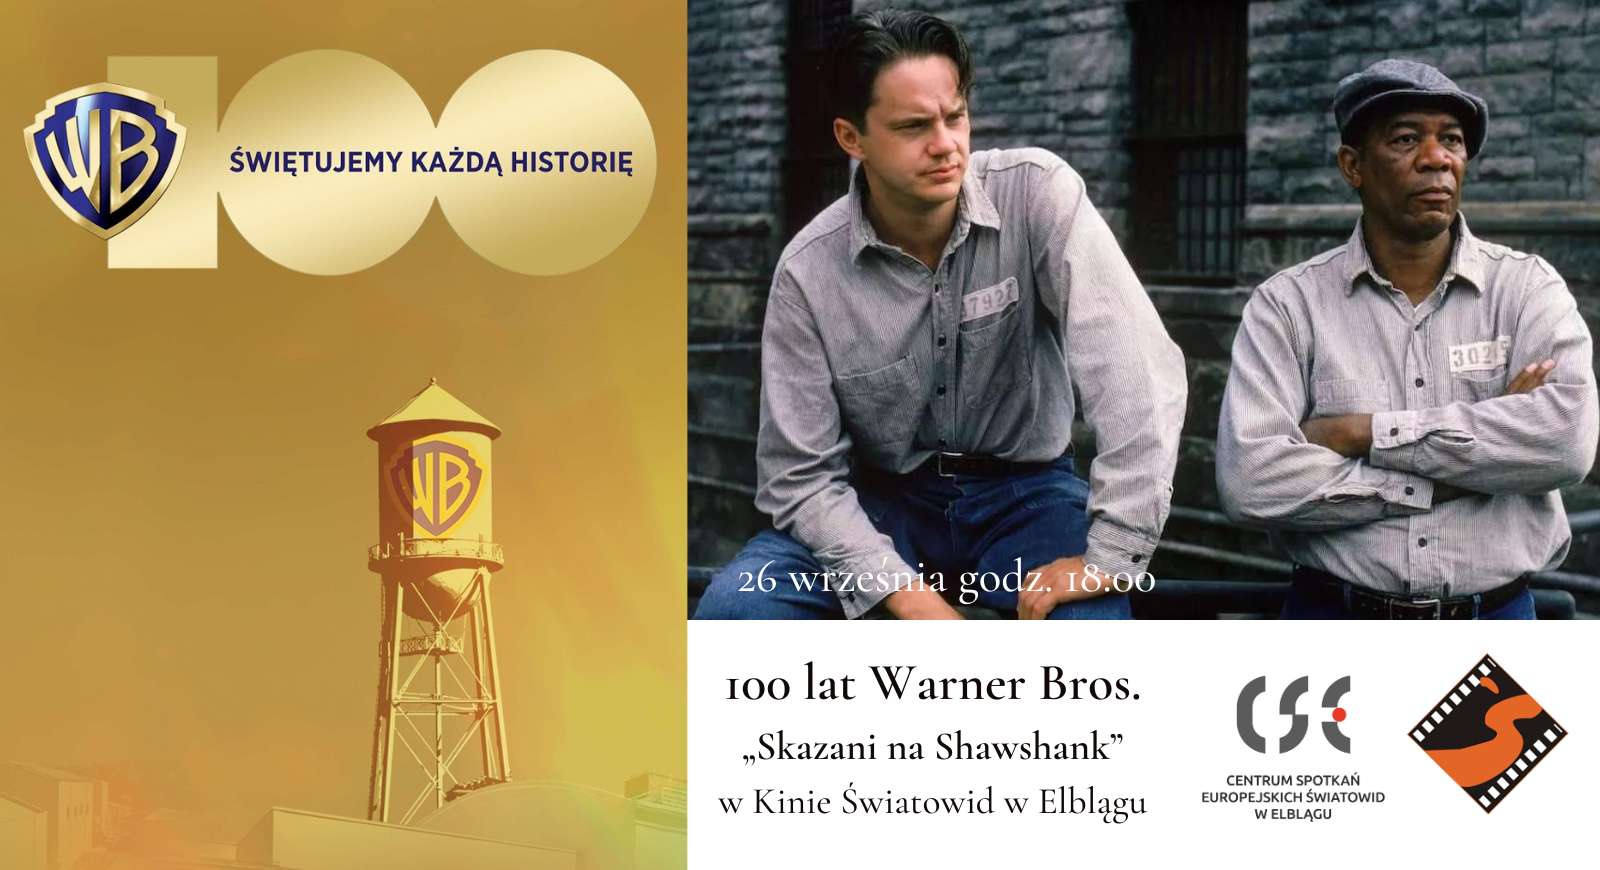 100 lat Warner Bros. „Skazani na Shawshank” w Kinie Światowid